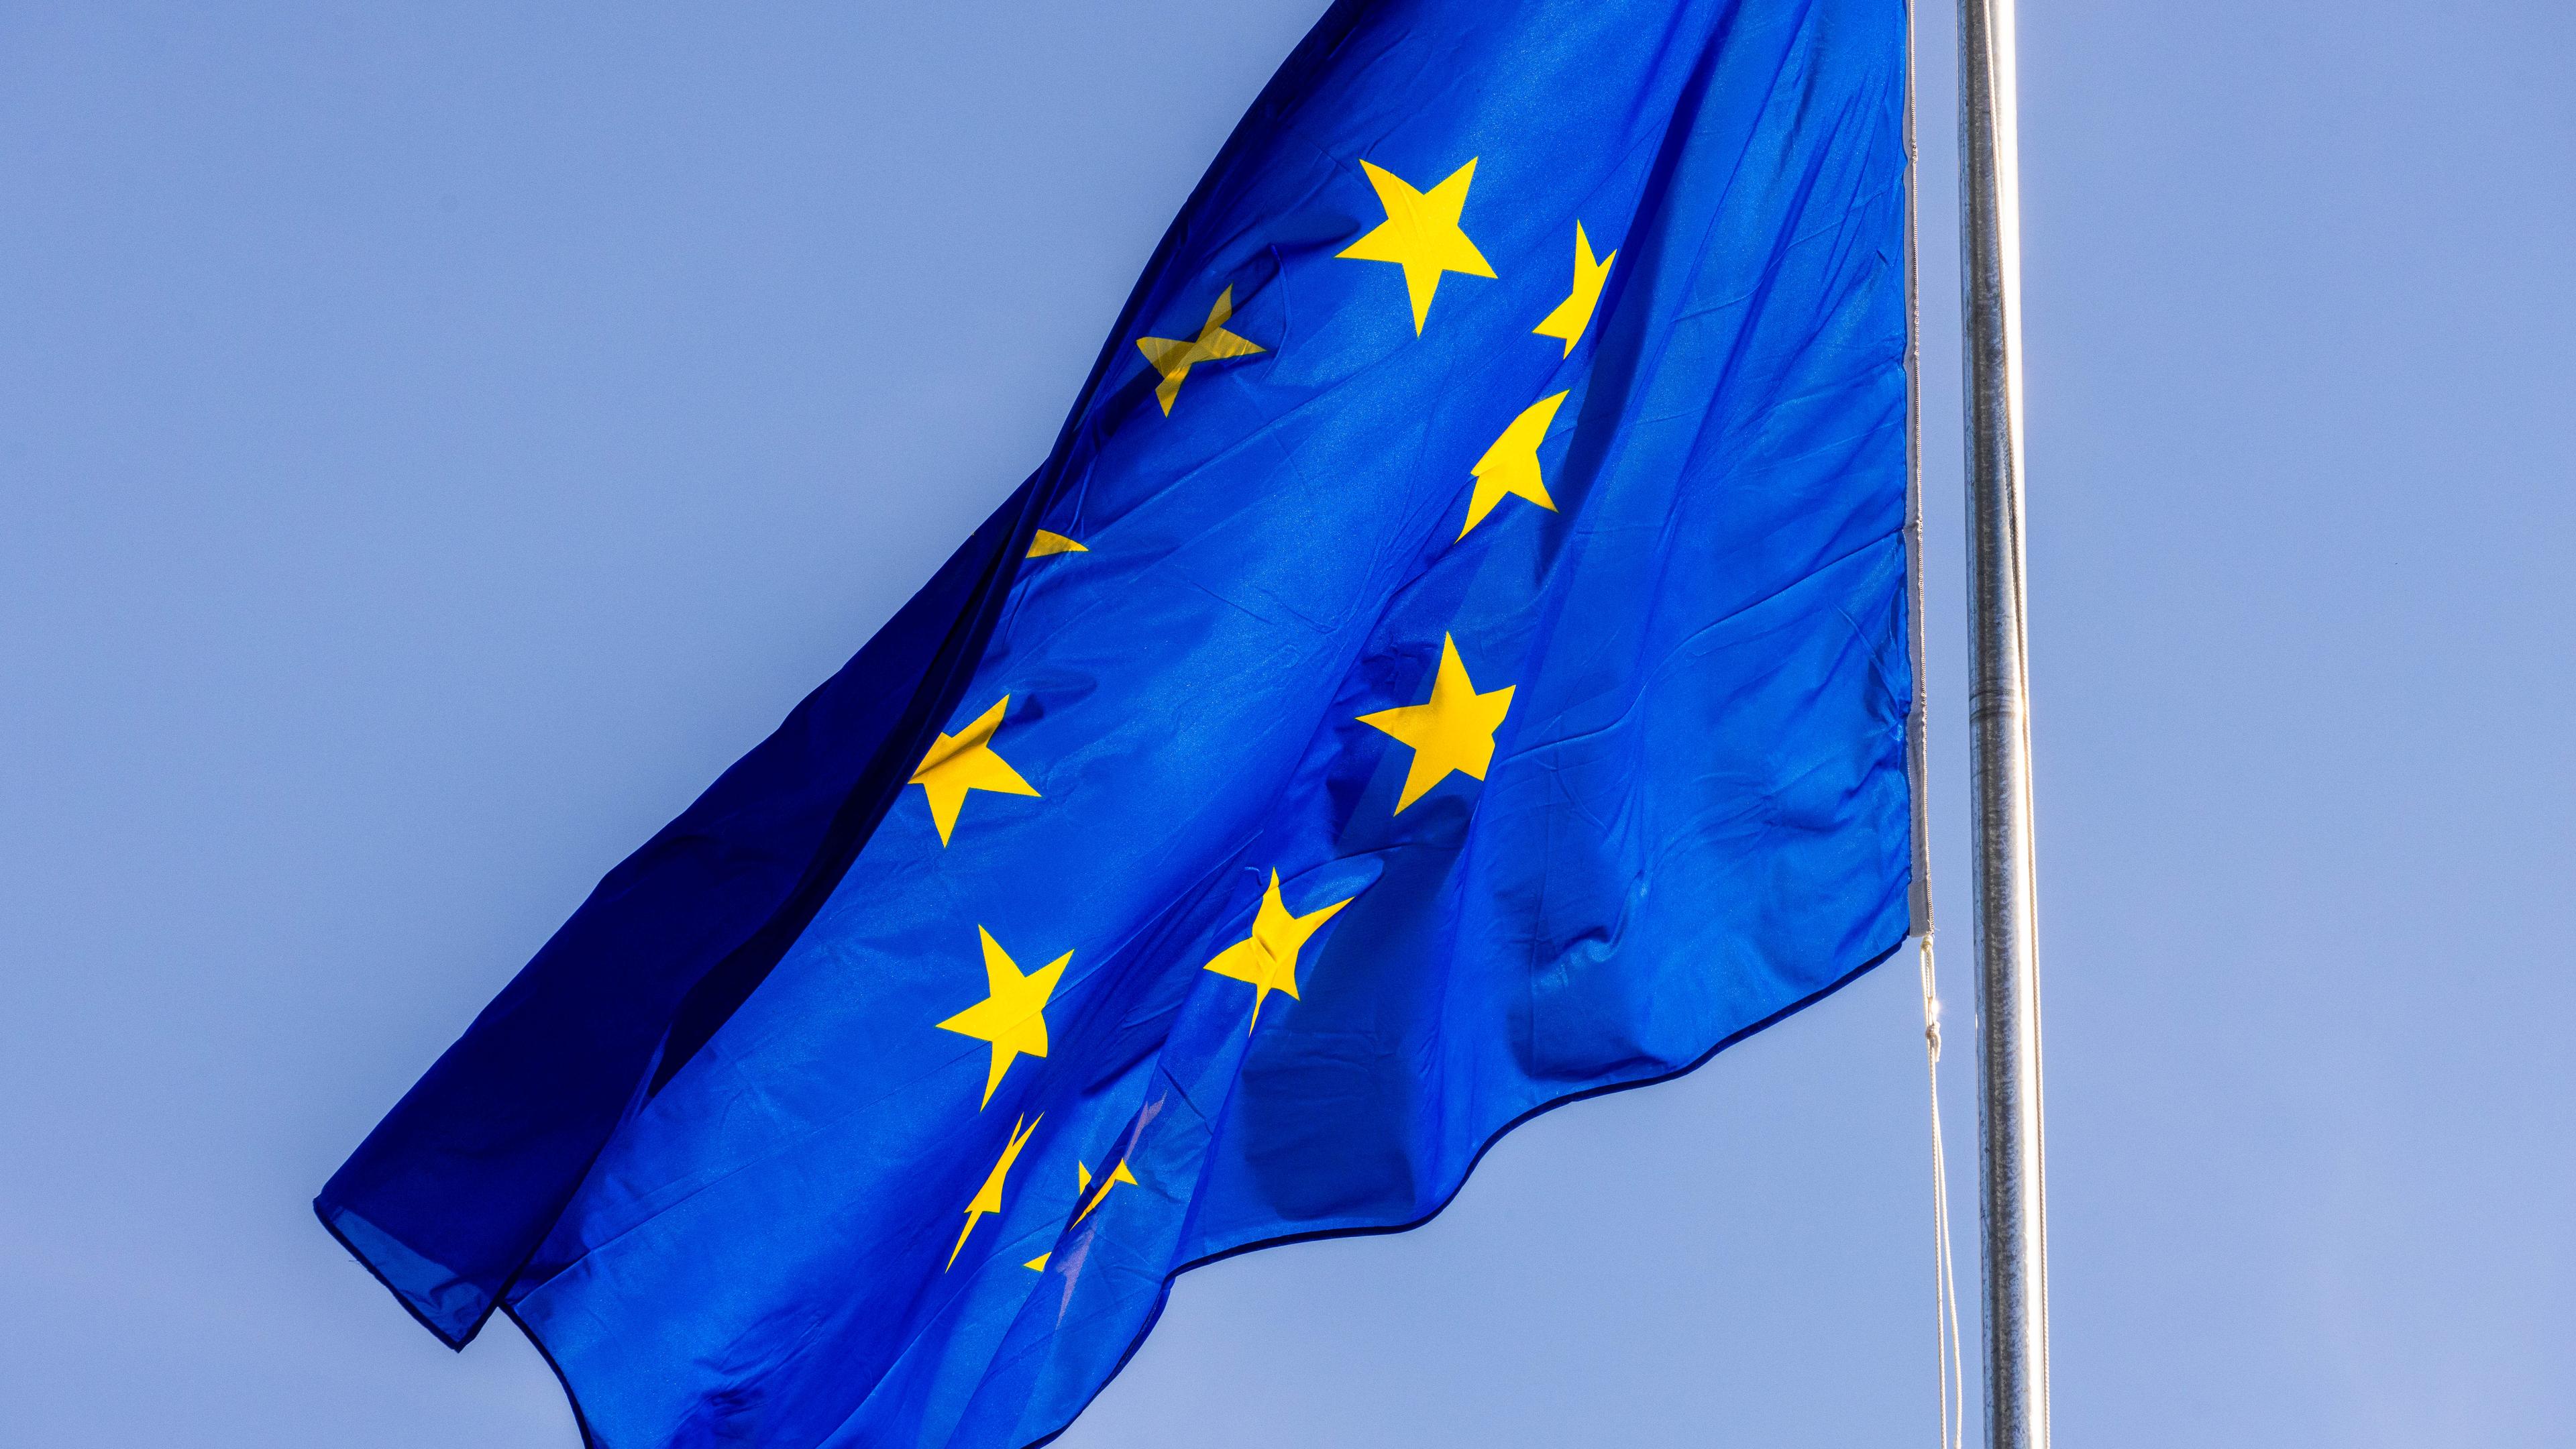 ARCHIV - 05.10.2022, Frankreich, Straßburg: Die Flagge der Europäischen Union weht vor dem Gebäude des Europäischen Parlaments in Straßburg. (zu dpa: «Umfrage: Attraktivität der EU als Unternehmensstandort ist gesunken») Foto: Philipp von Ditfurth/dpa +++ dpa-Bildfunk +++